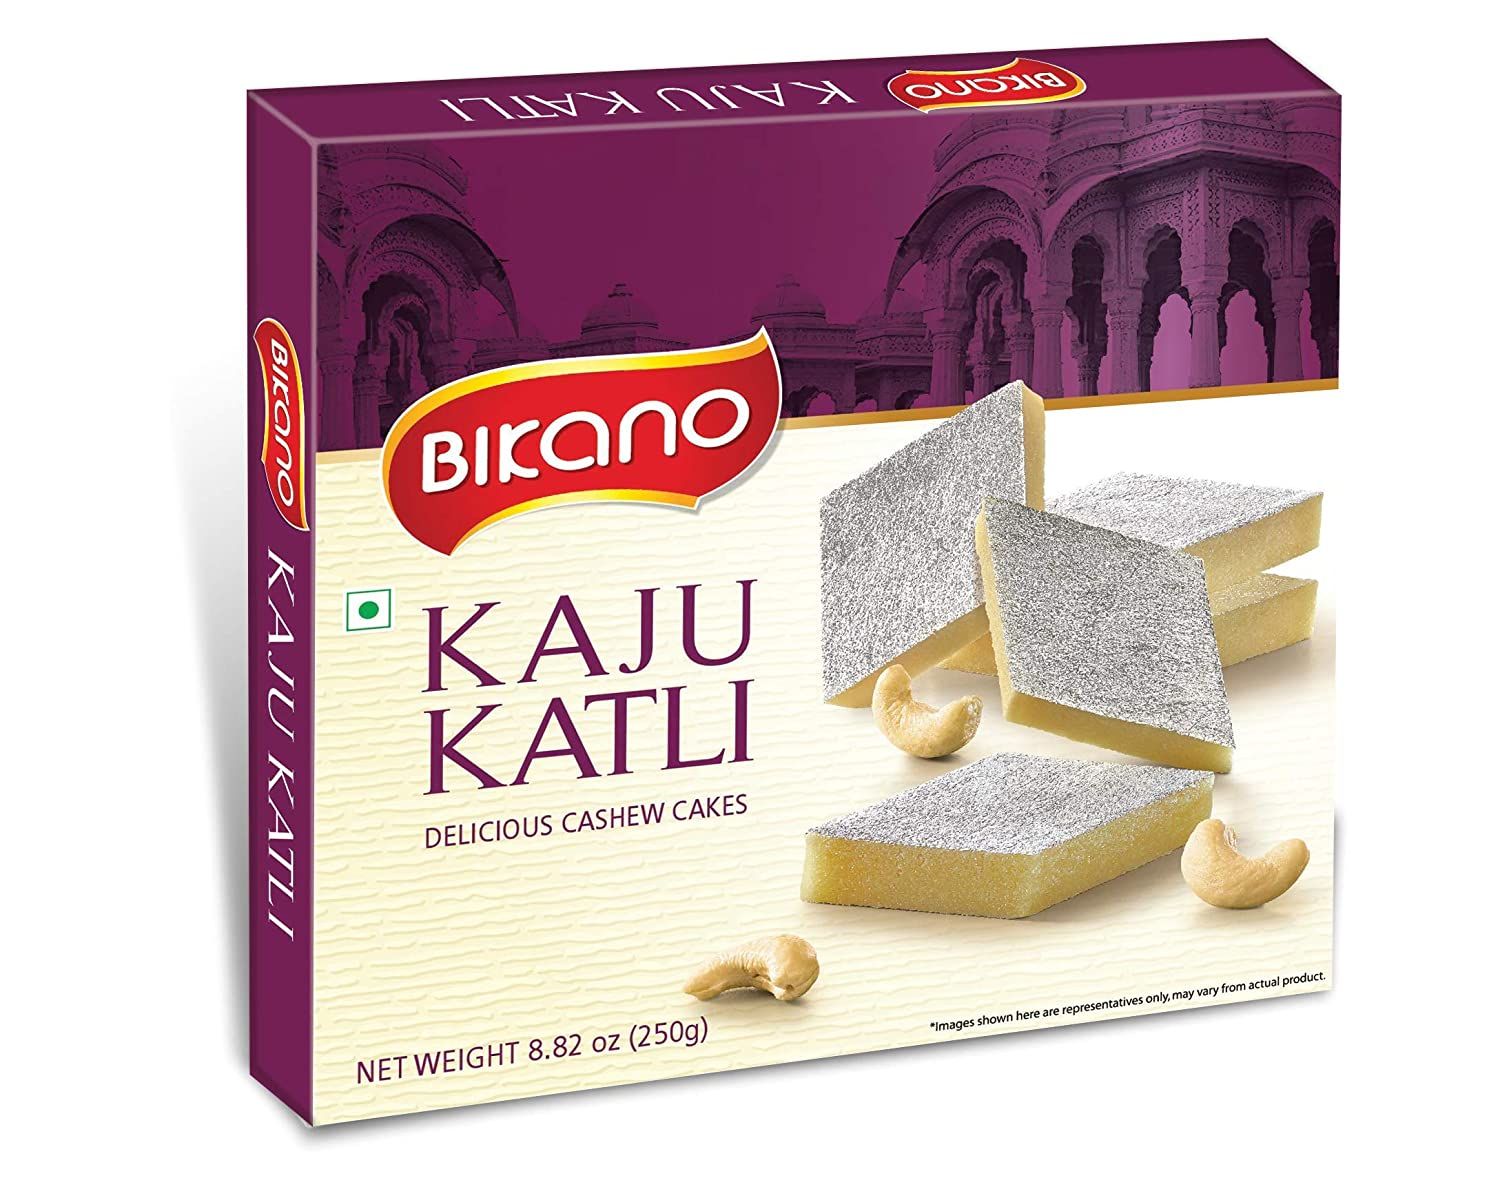 Bikano Kaju Katli Image